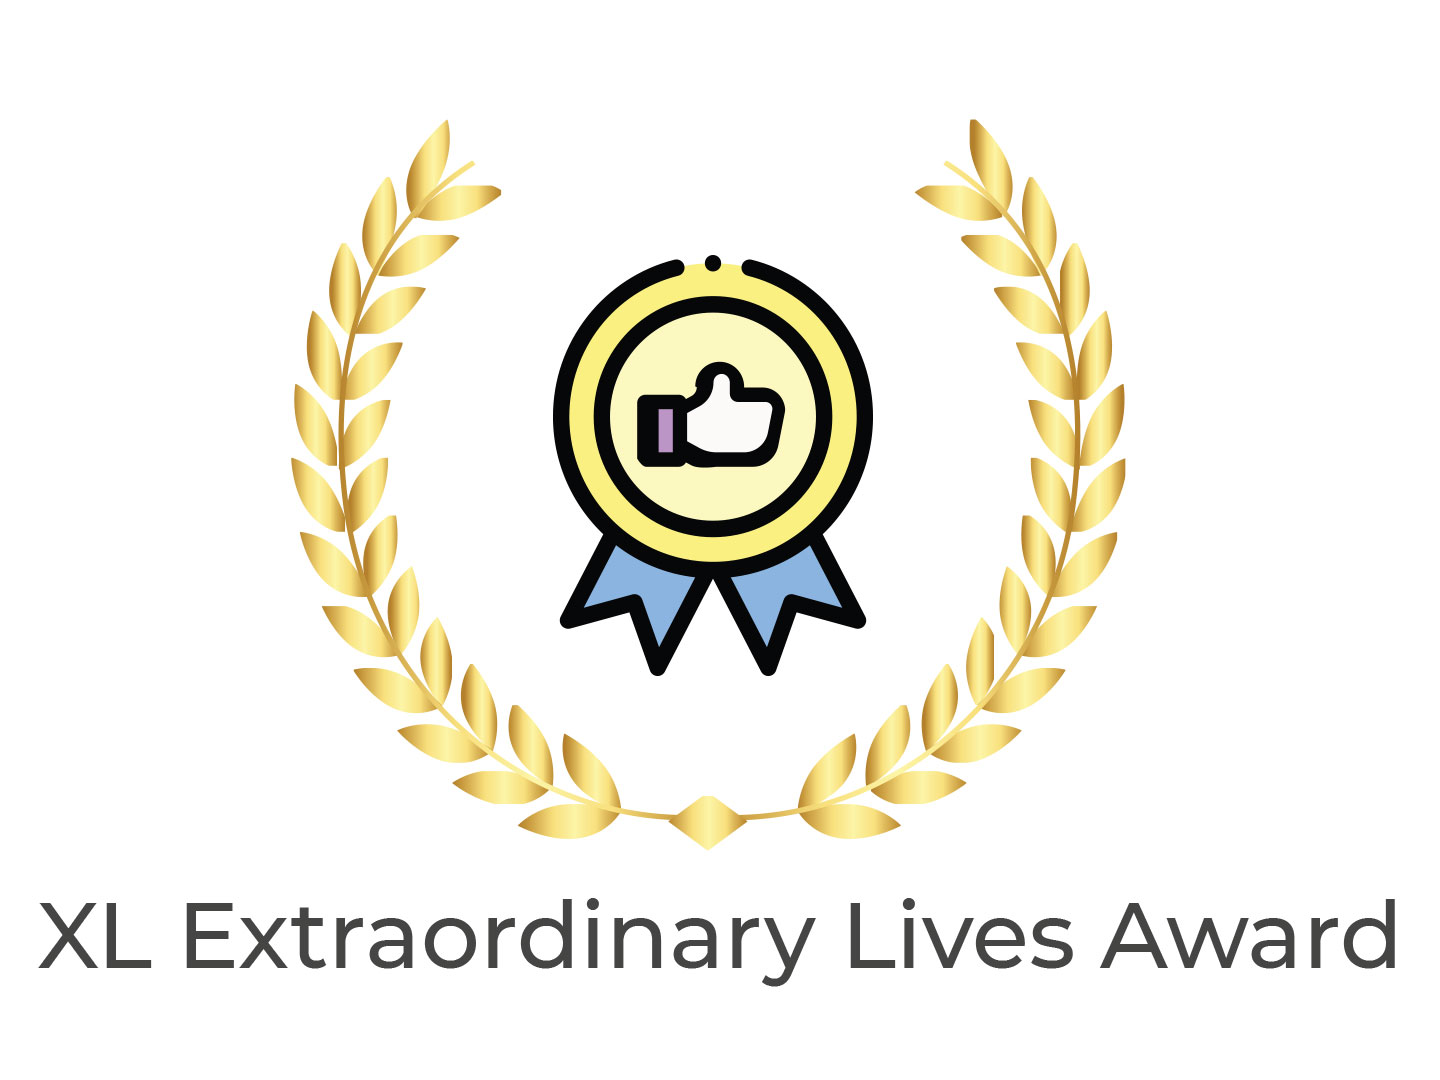 XL extraordinary Lives Award